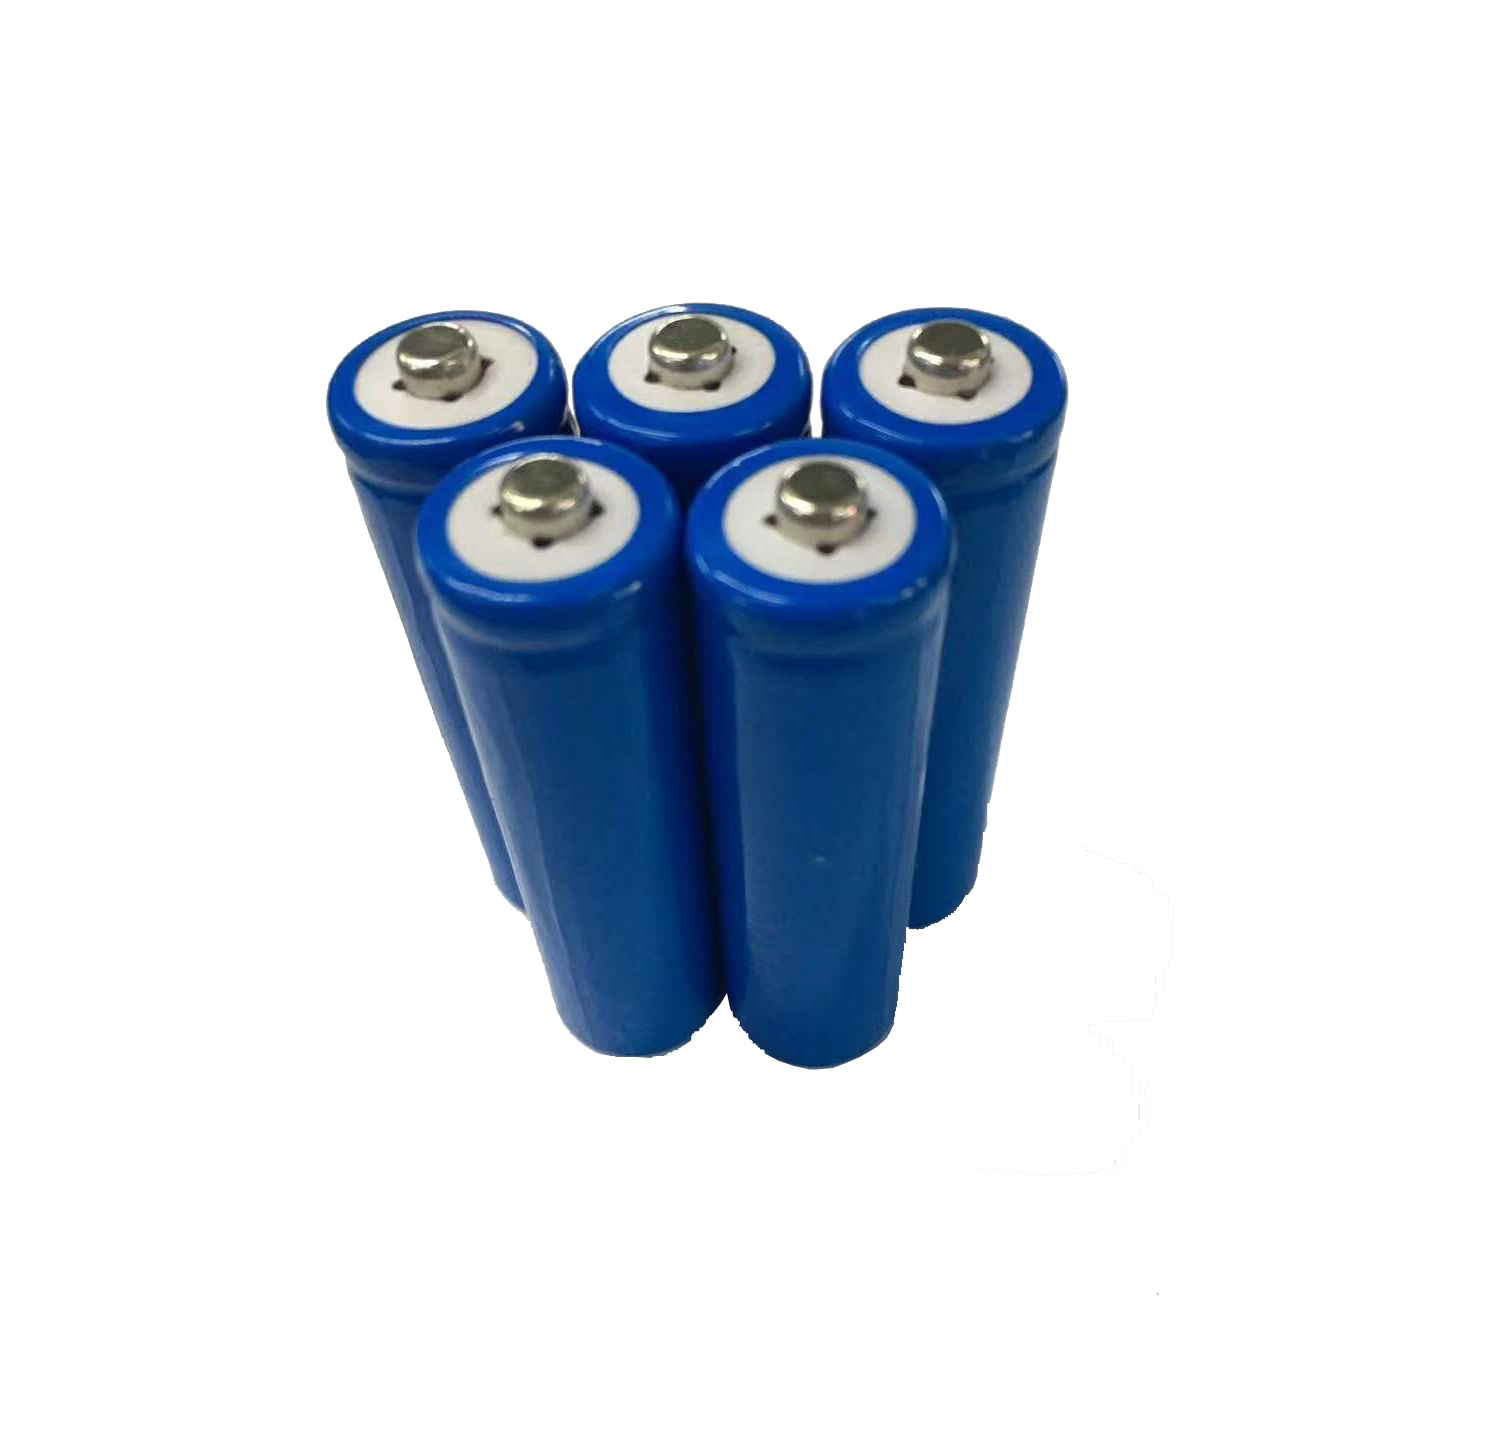 Lifepo4 Battery Cell 14500 3.2V 600mAH AA Battery